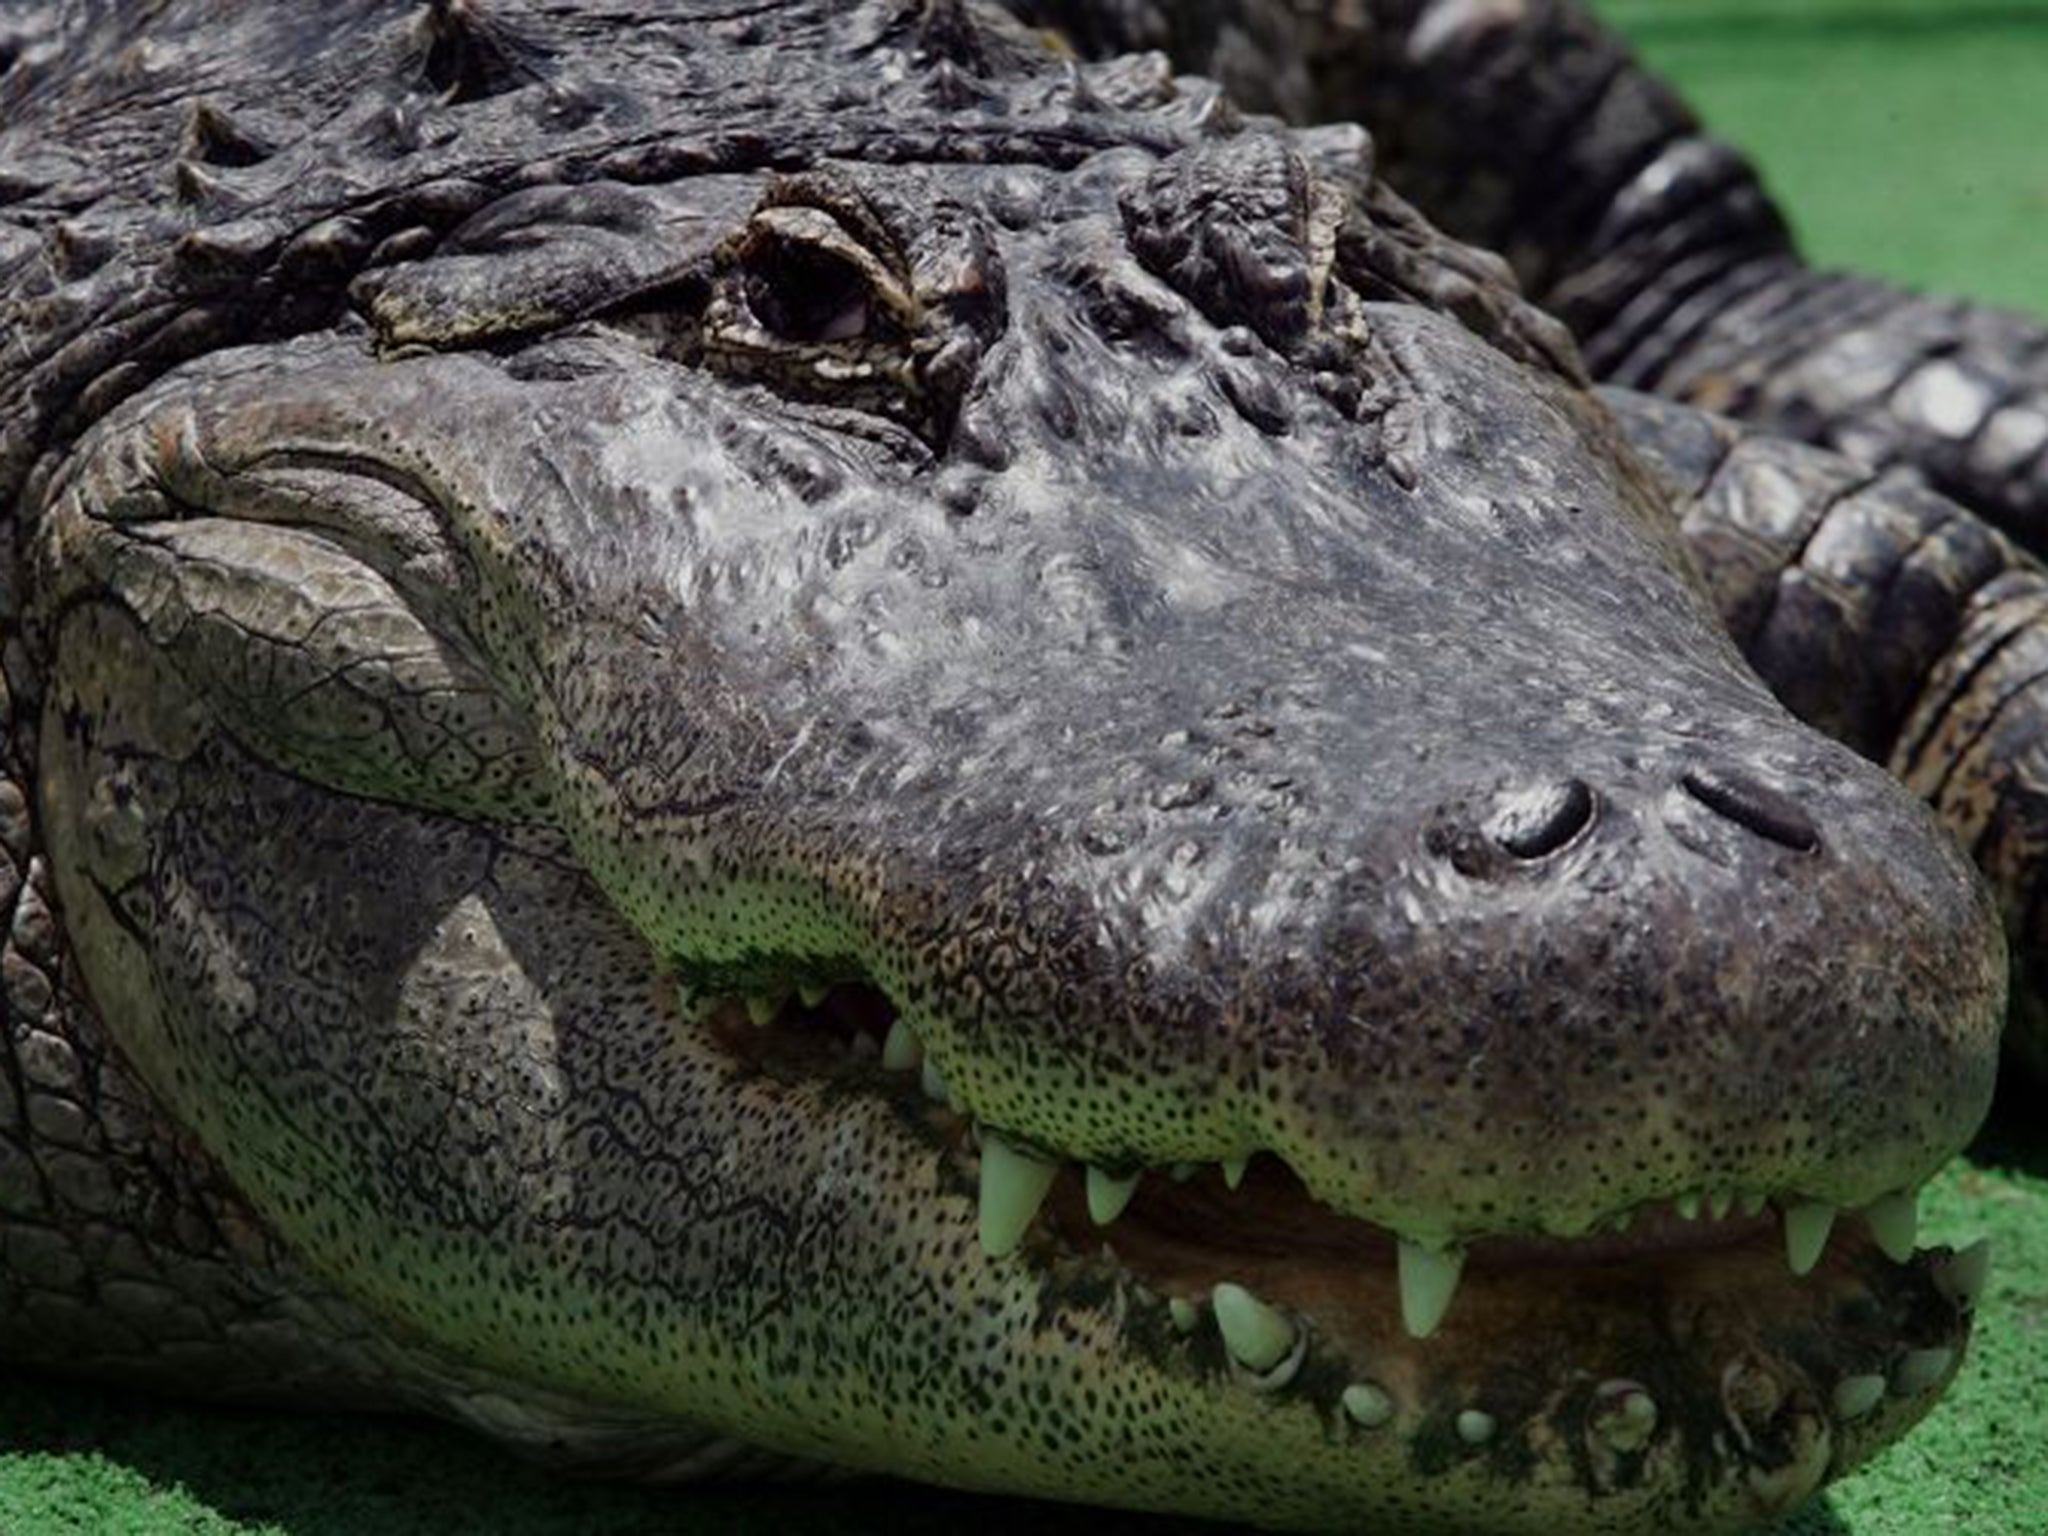 Alligators are “uniquely male” animals